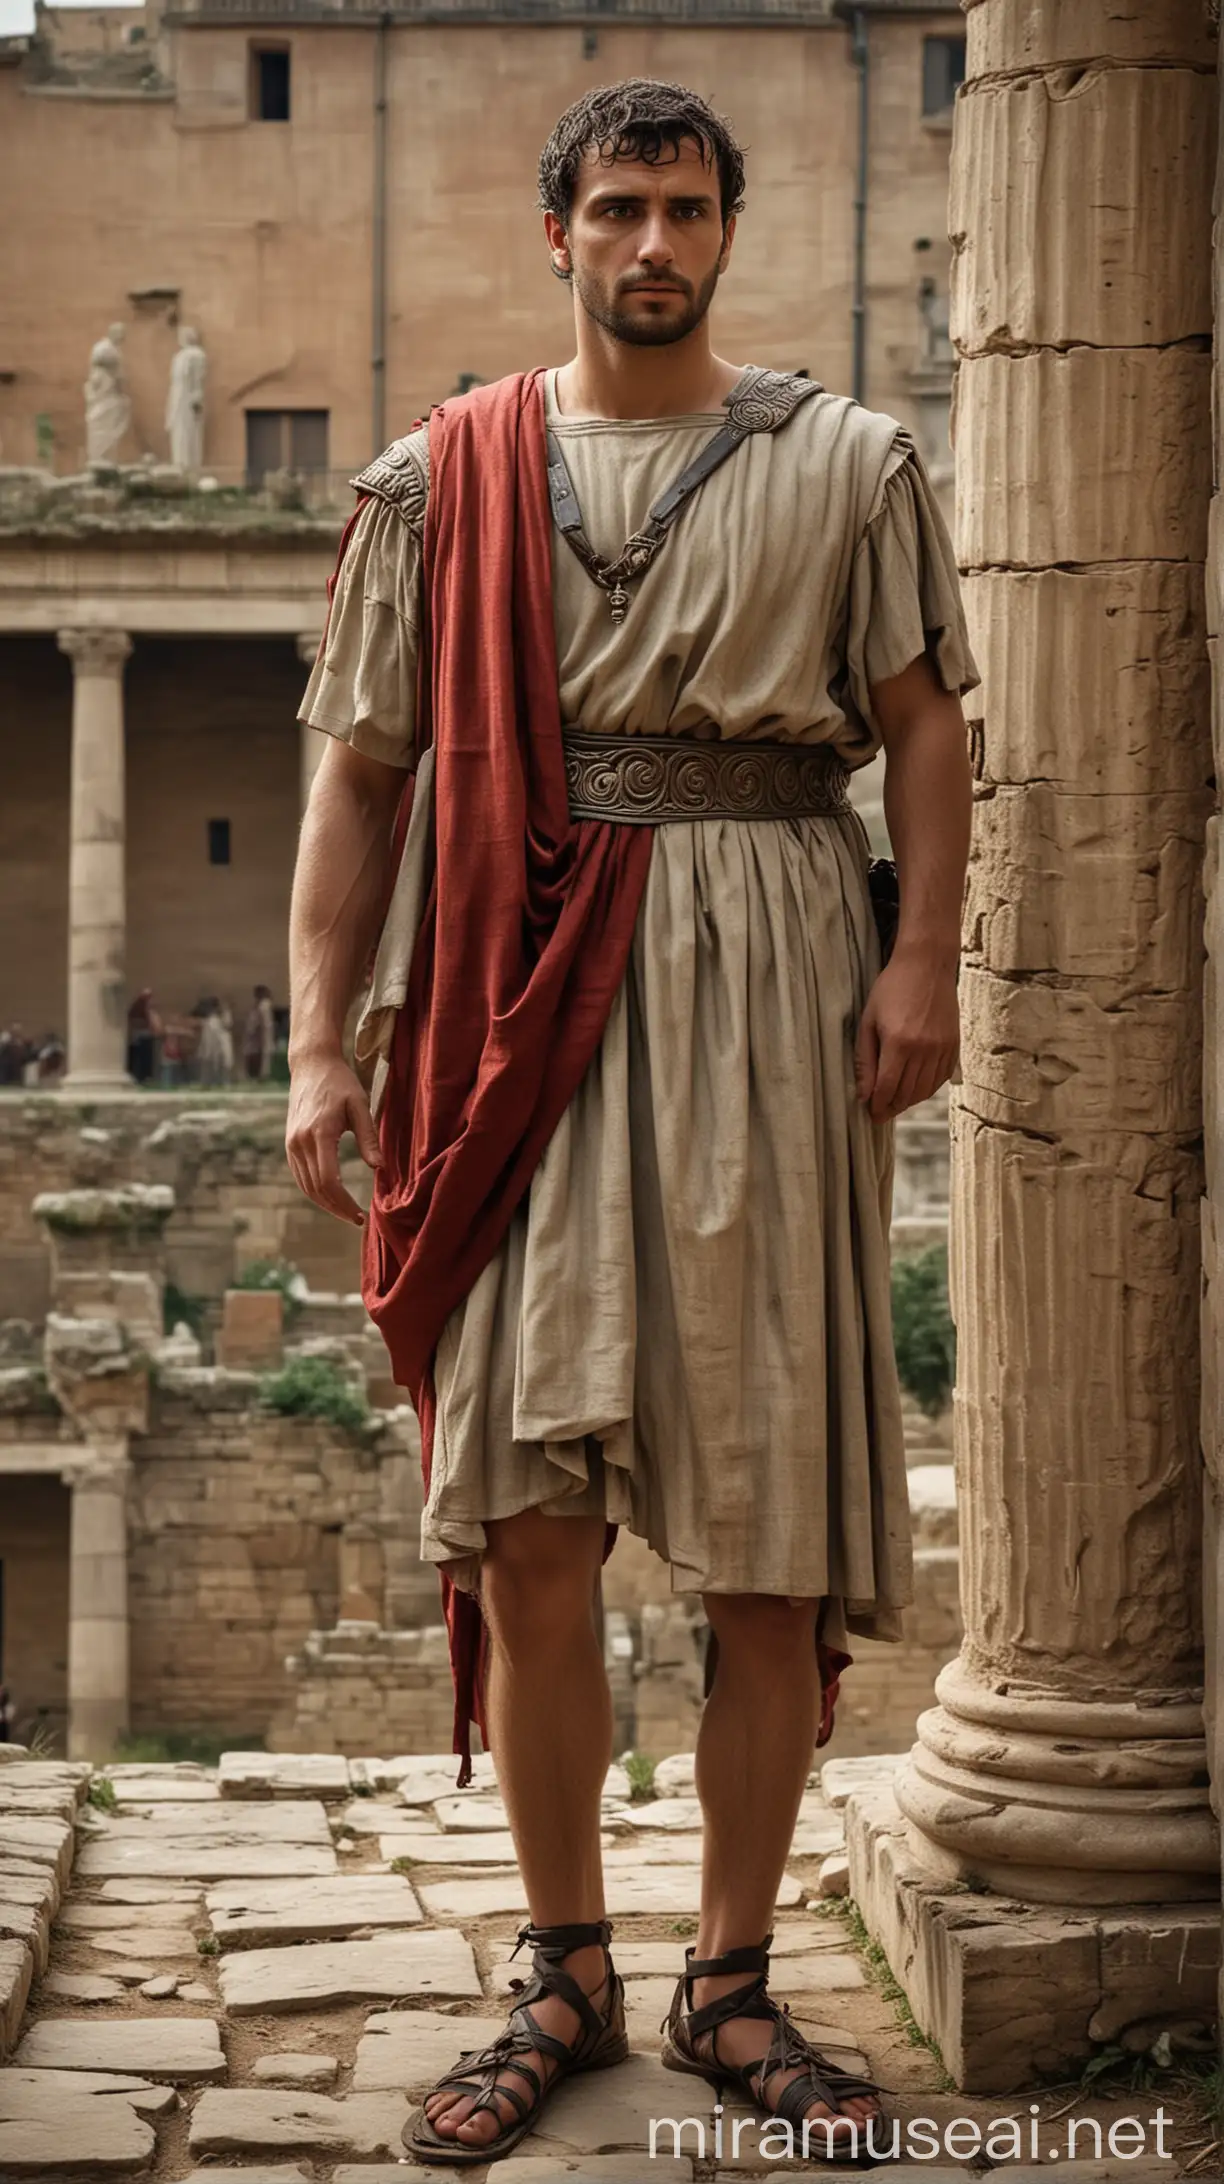 Ancient Roman Figure in Period Attire 1st Century AD